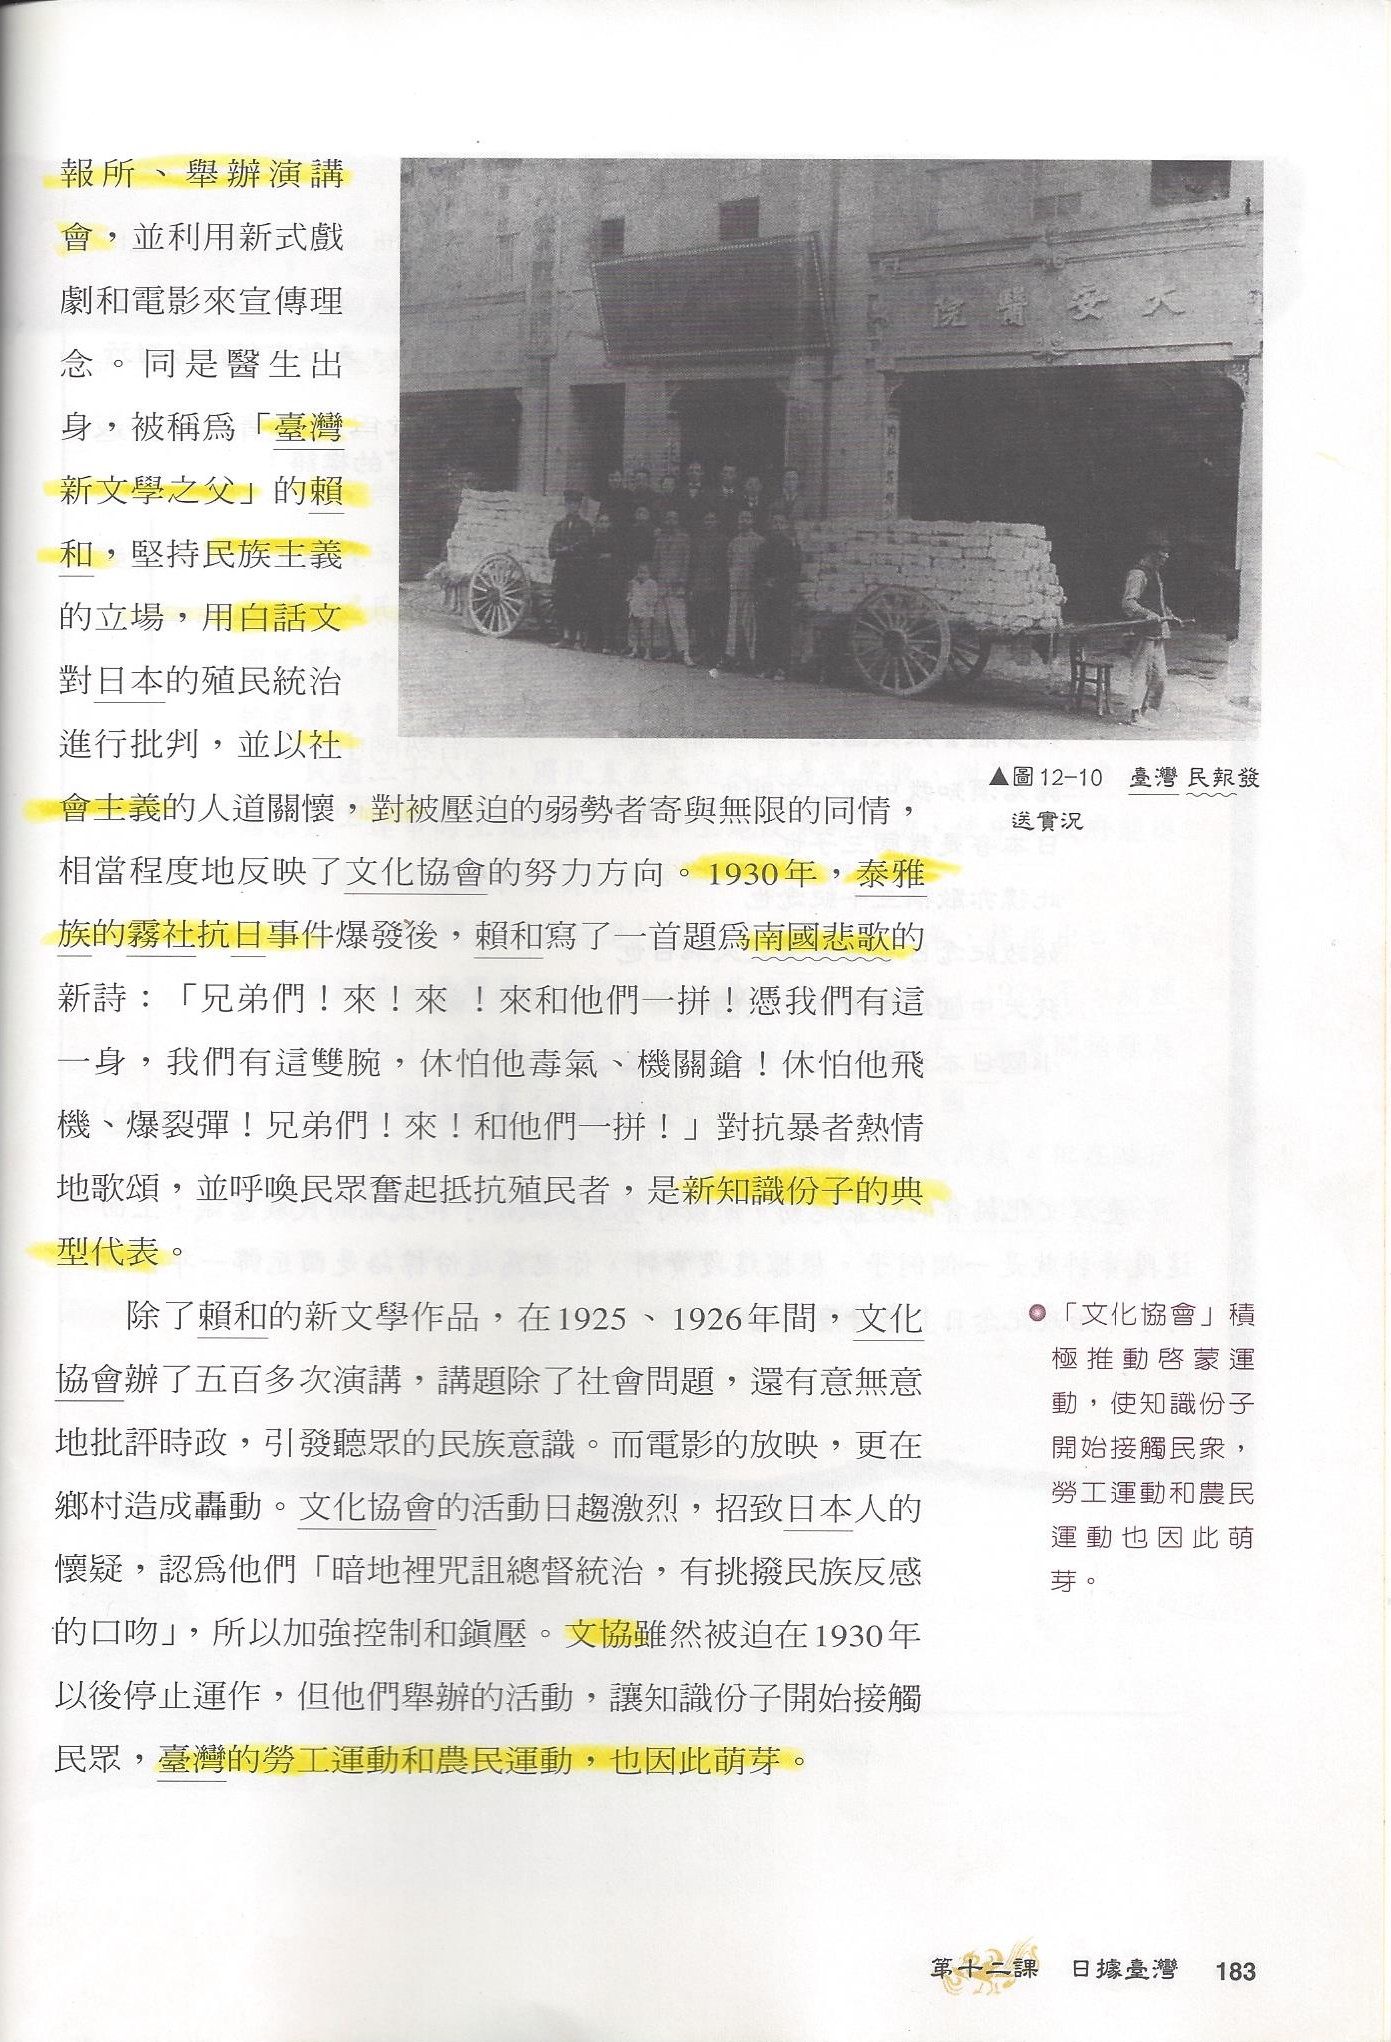 歷史課本-蔣渭水-內頁-8.jpg